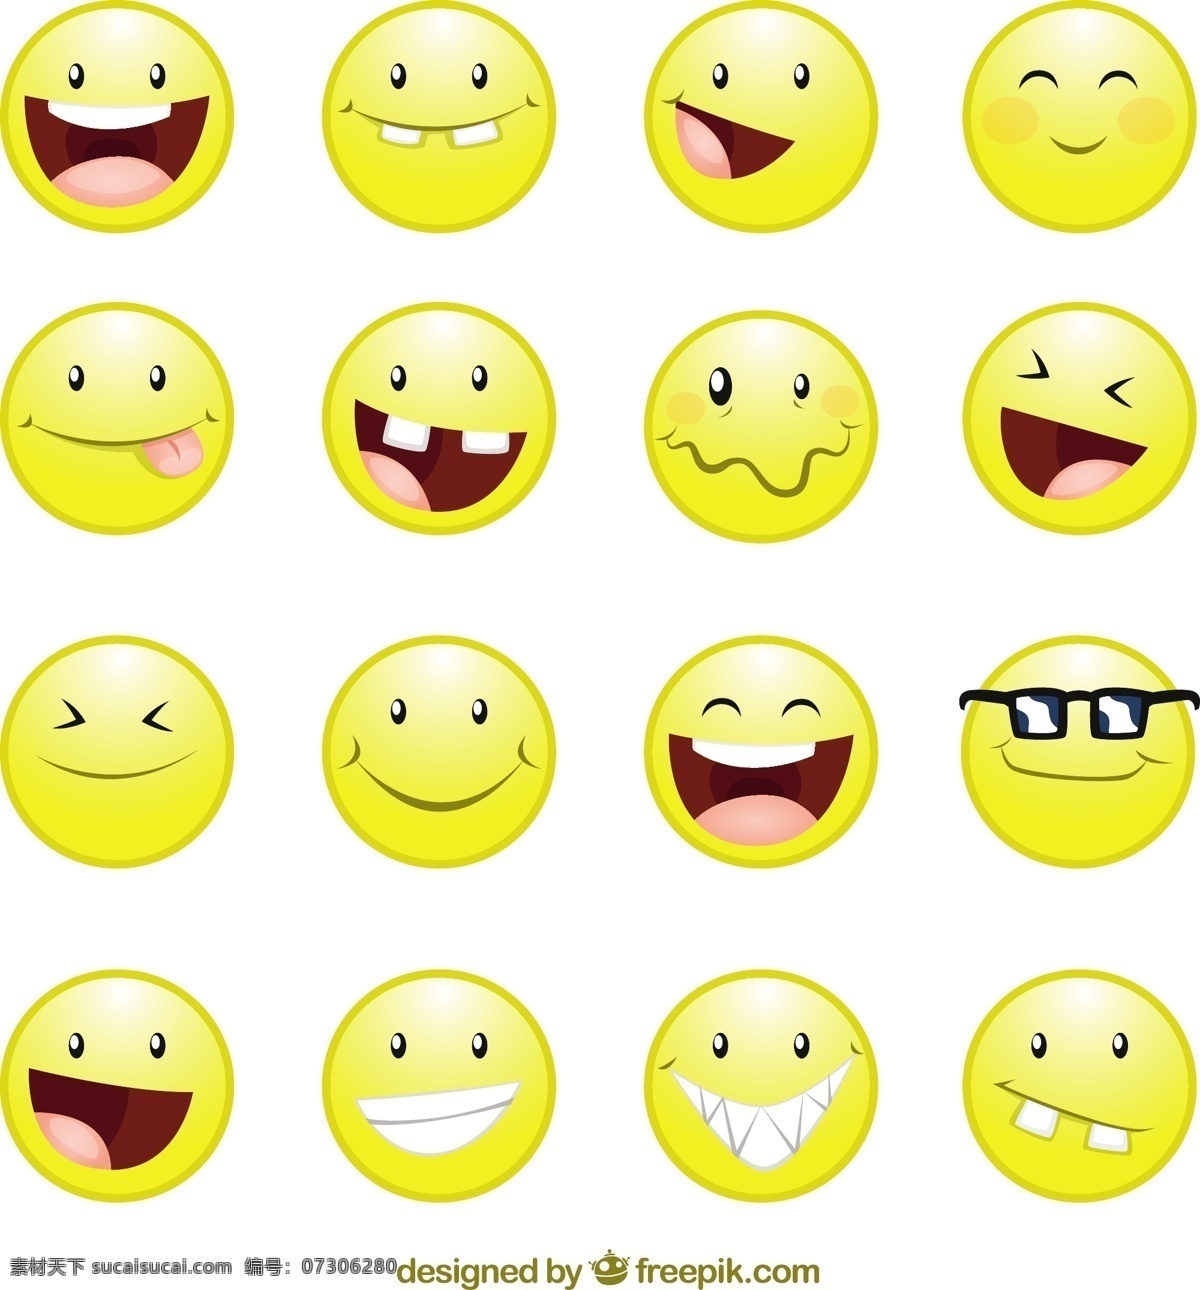 微笑的脸 图标 动画 微笑面对 快乐 性格 笑脸 表情 好玩 有趣 卡通 人物 面孔 幸福 情感 表达 白色